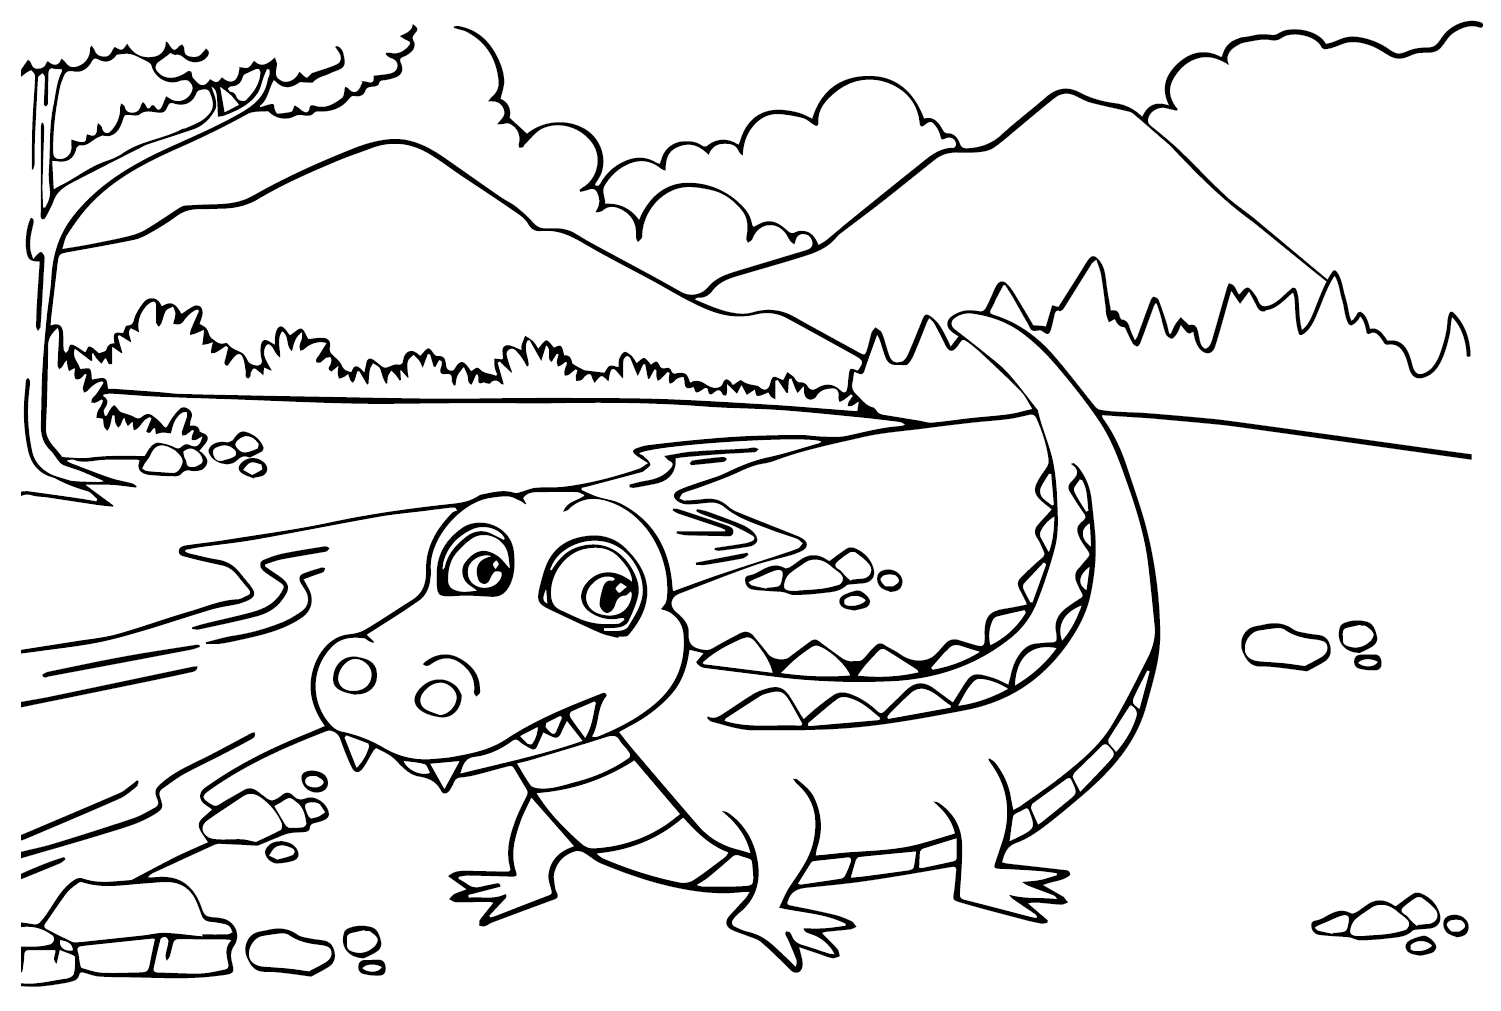 Página para colorir de crocodilo de Crocodile